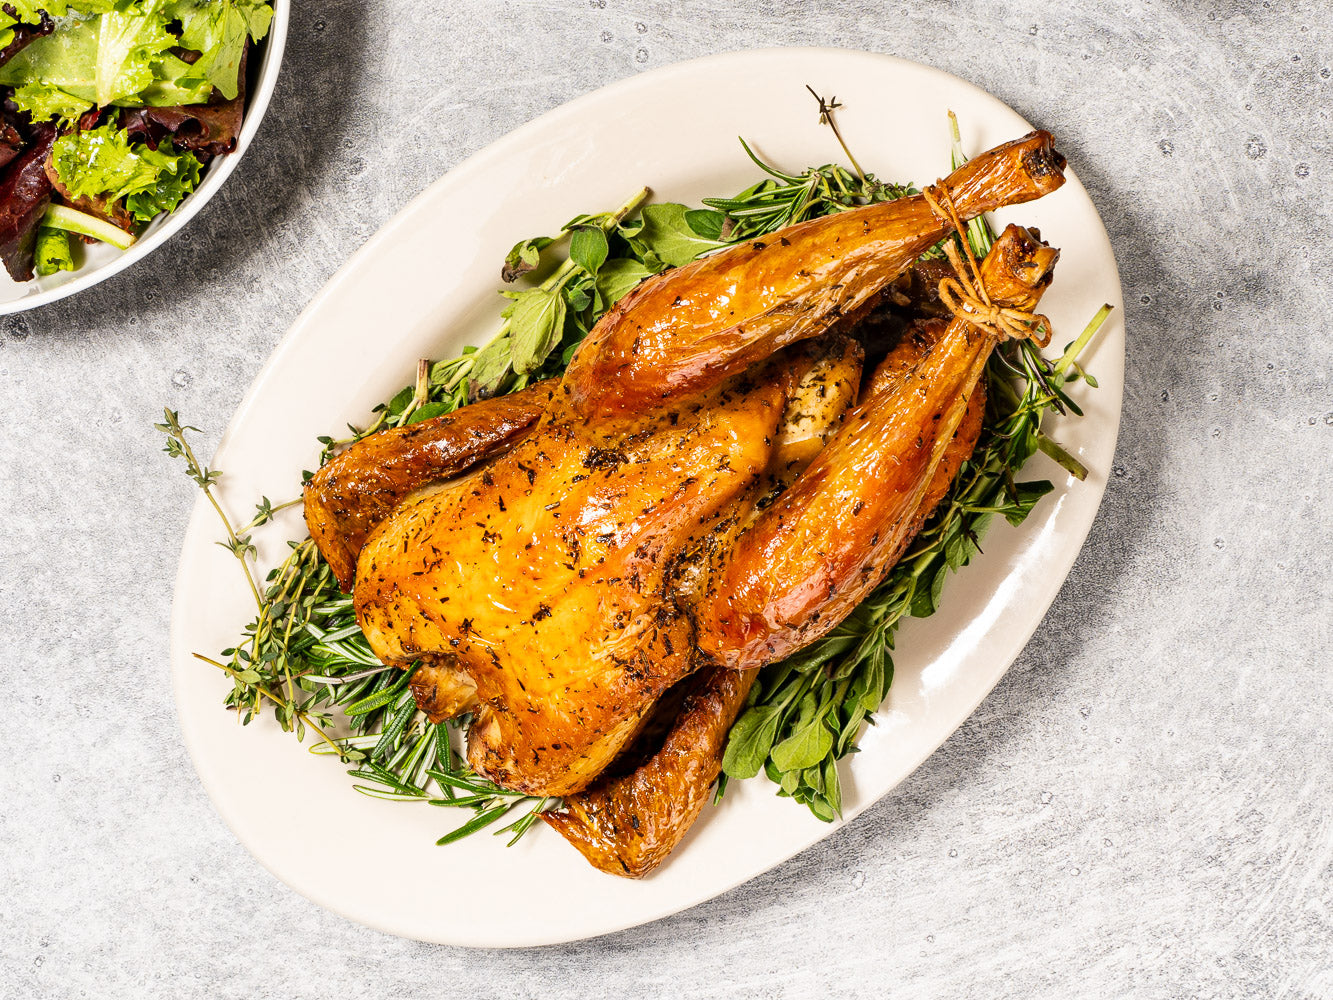 Heritage Chicken pre-seasoned with herbes de Provence from Burlap & Barrel